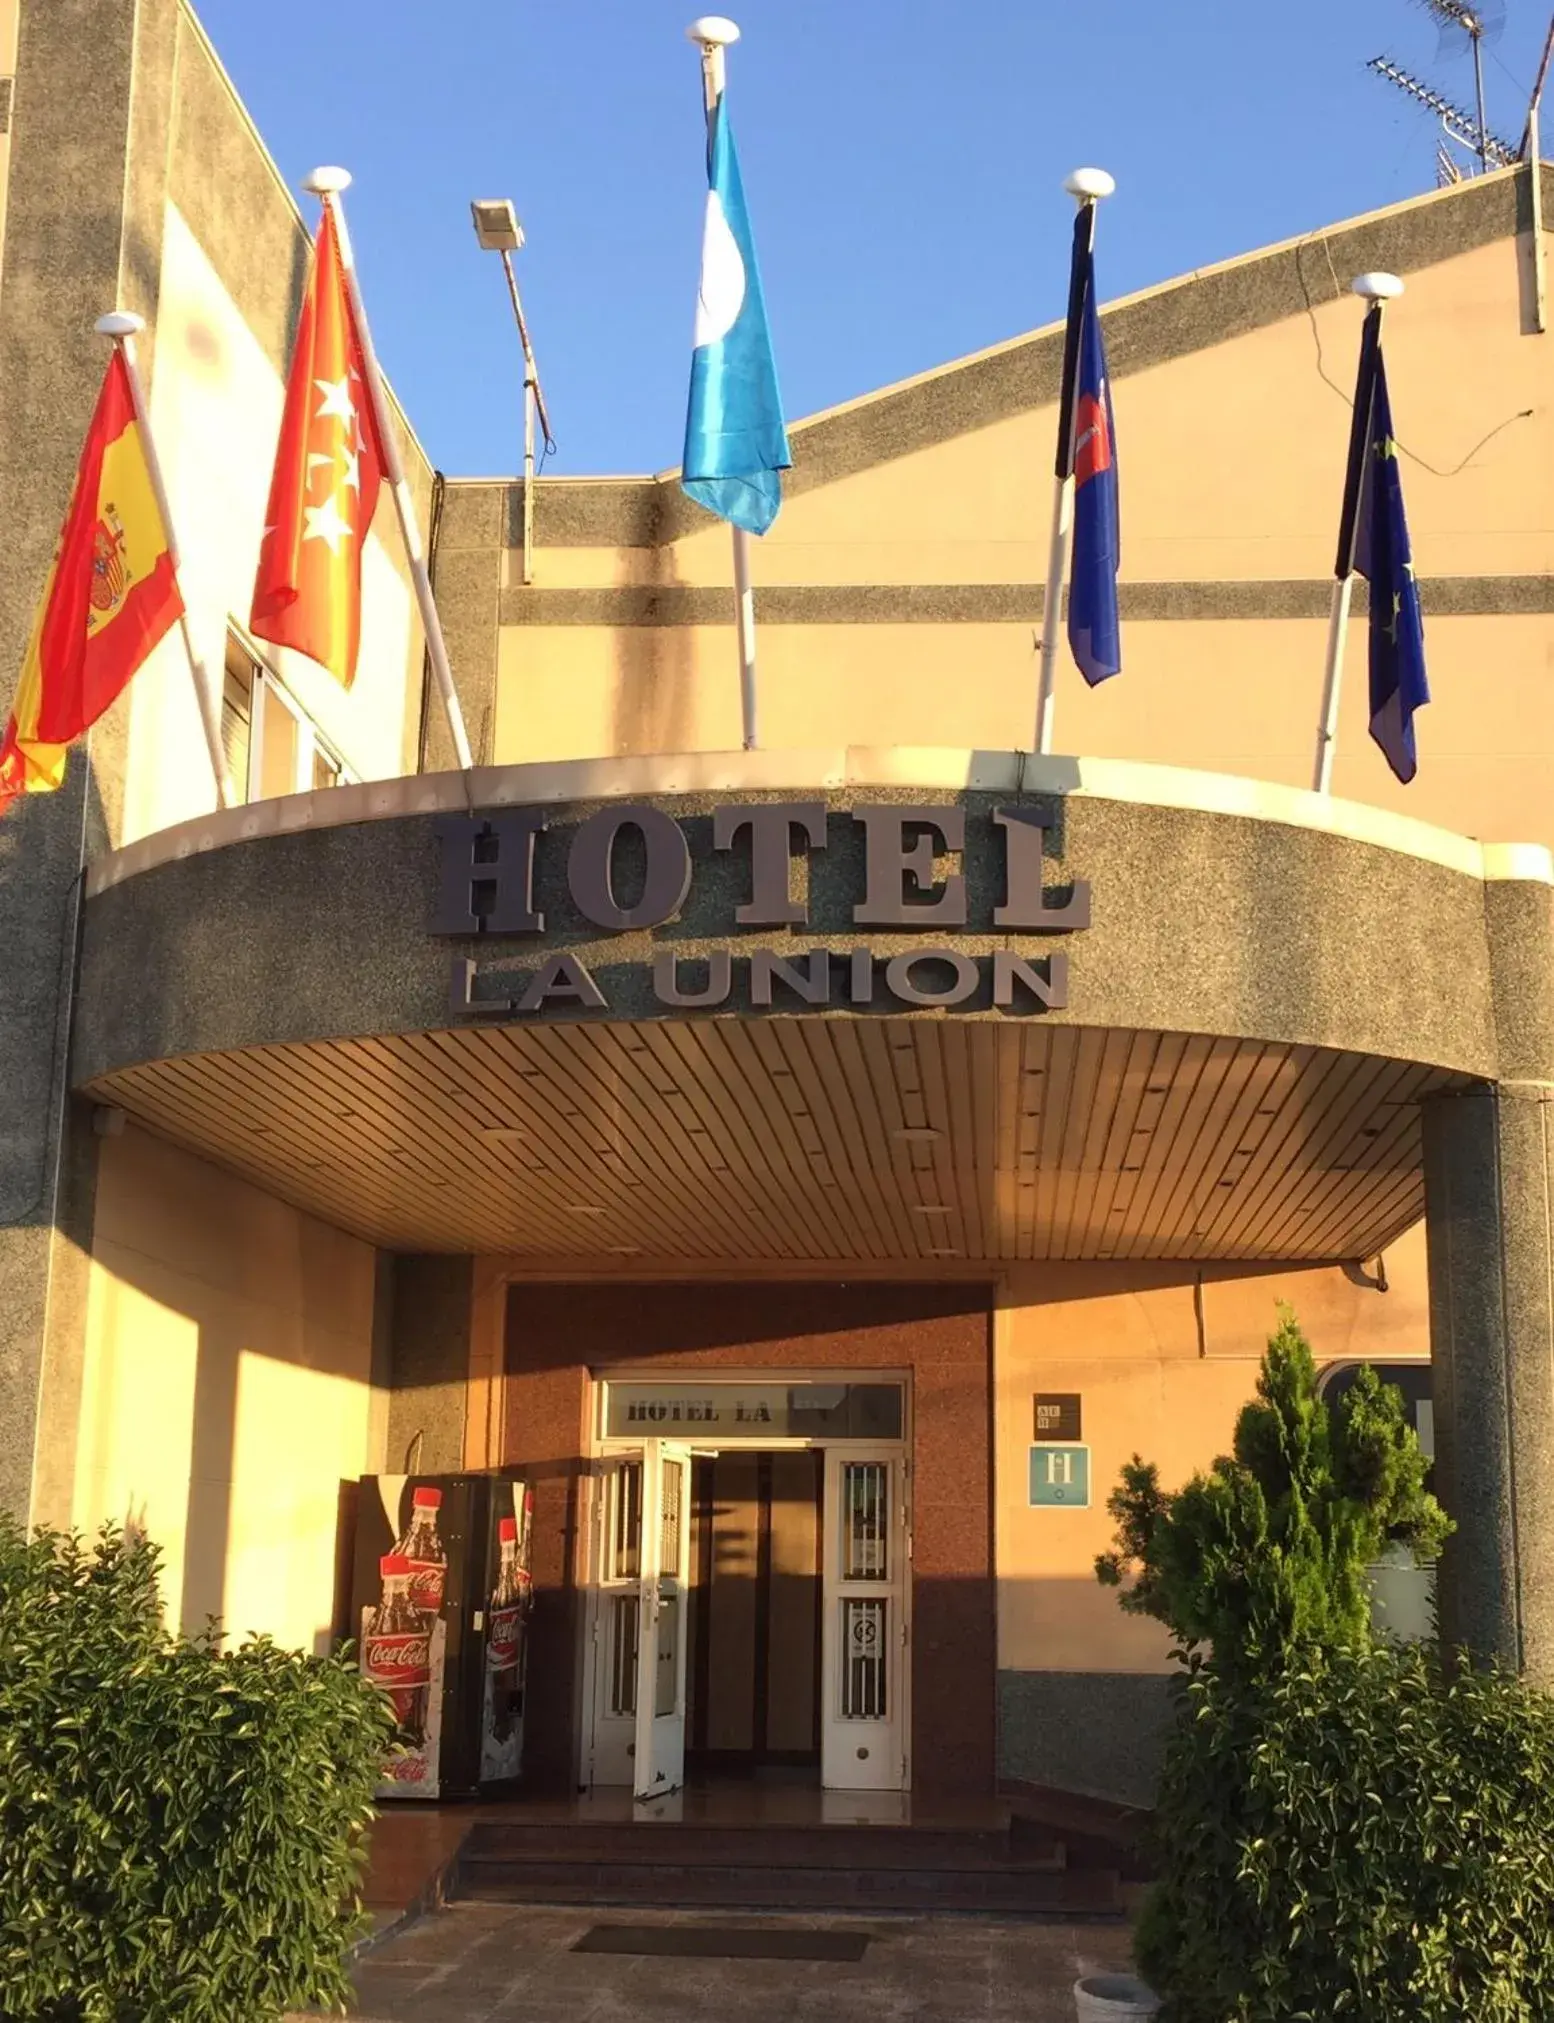 Facade/entrance in Hotel La Union